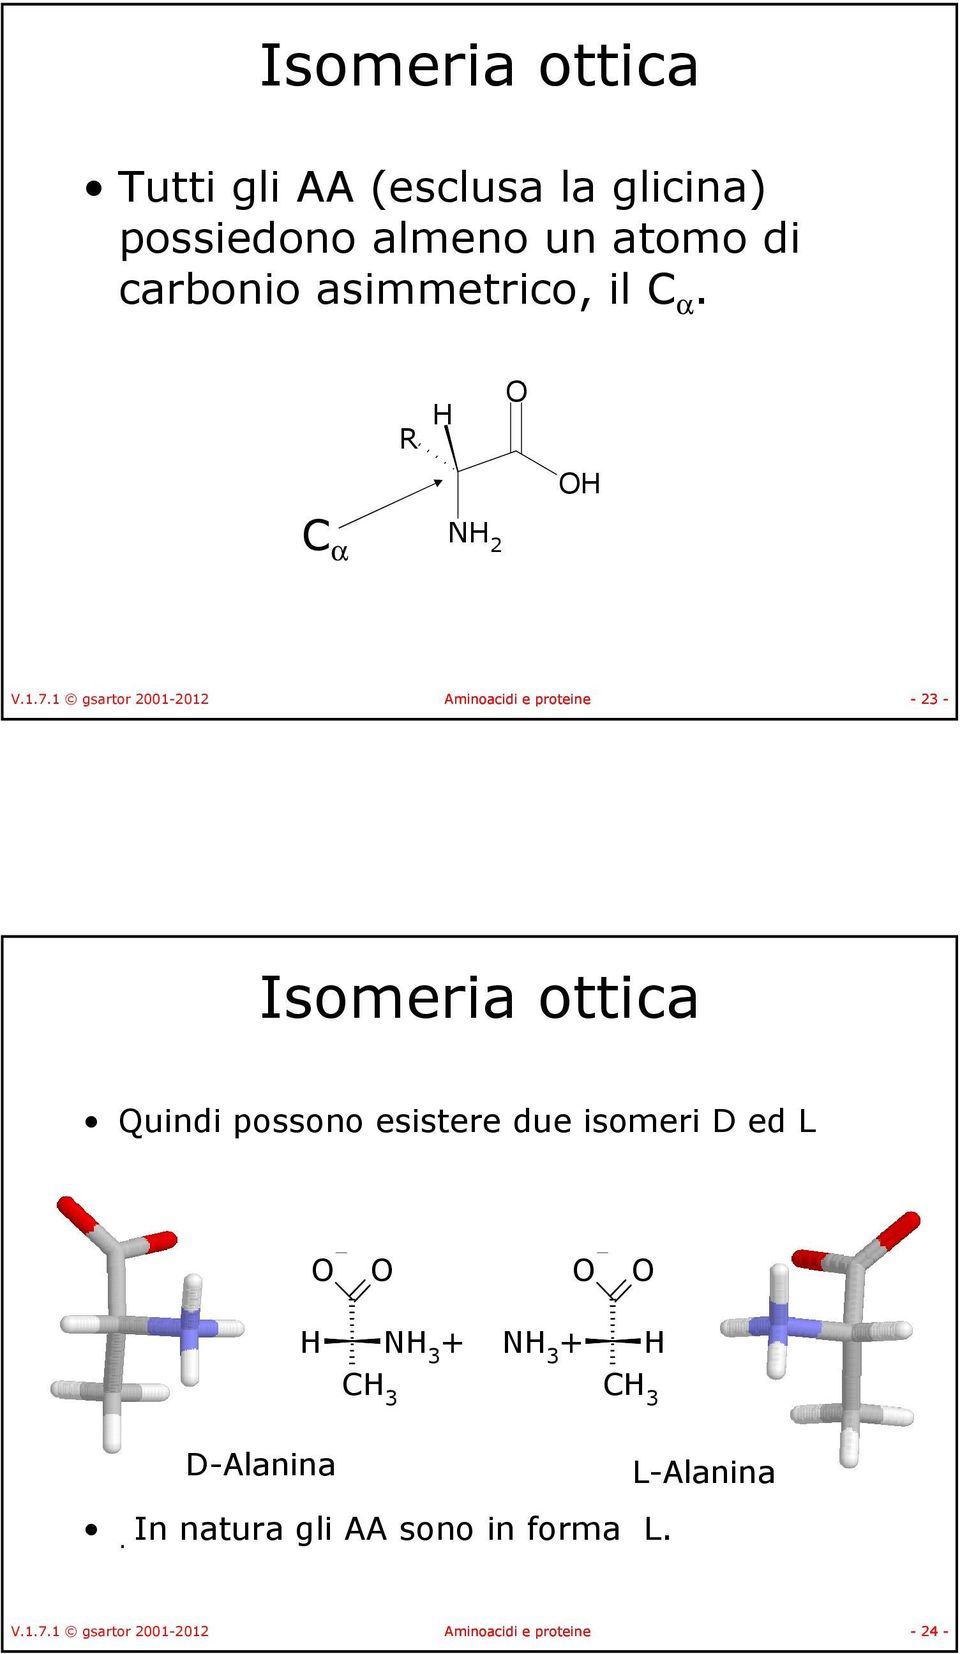 1 gsartor 2001-2012 Aminoacidi e proteine - 23 - Isomeria ottica Quindi possono